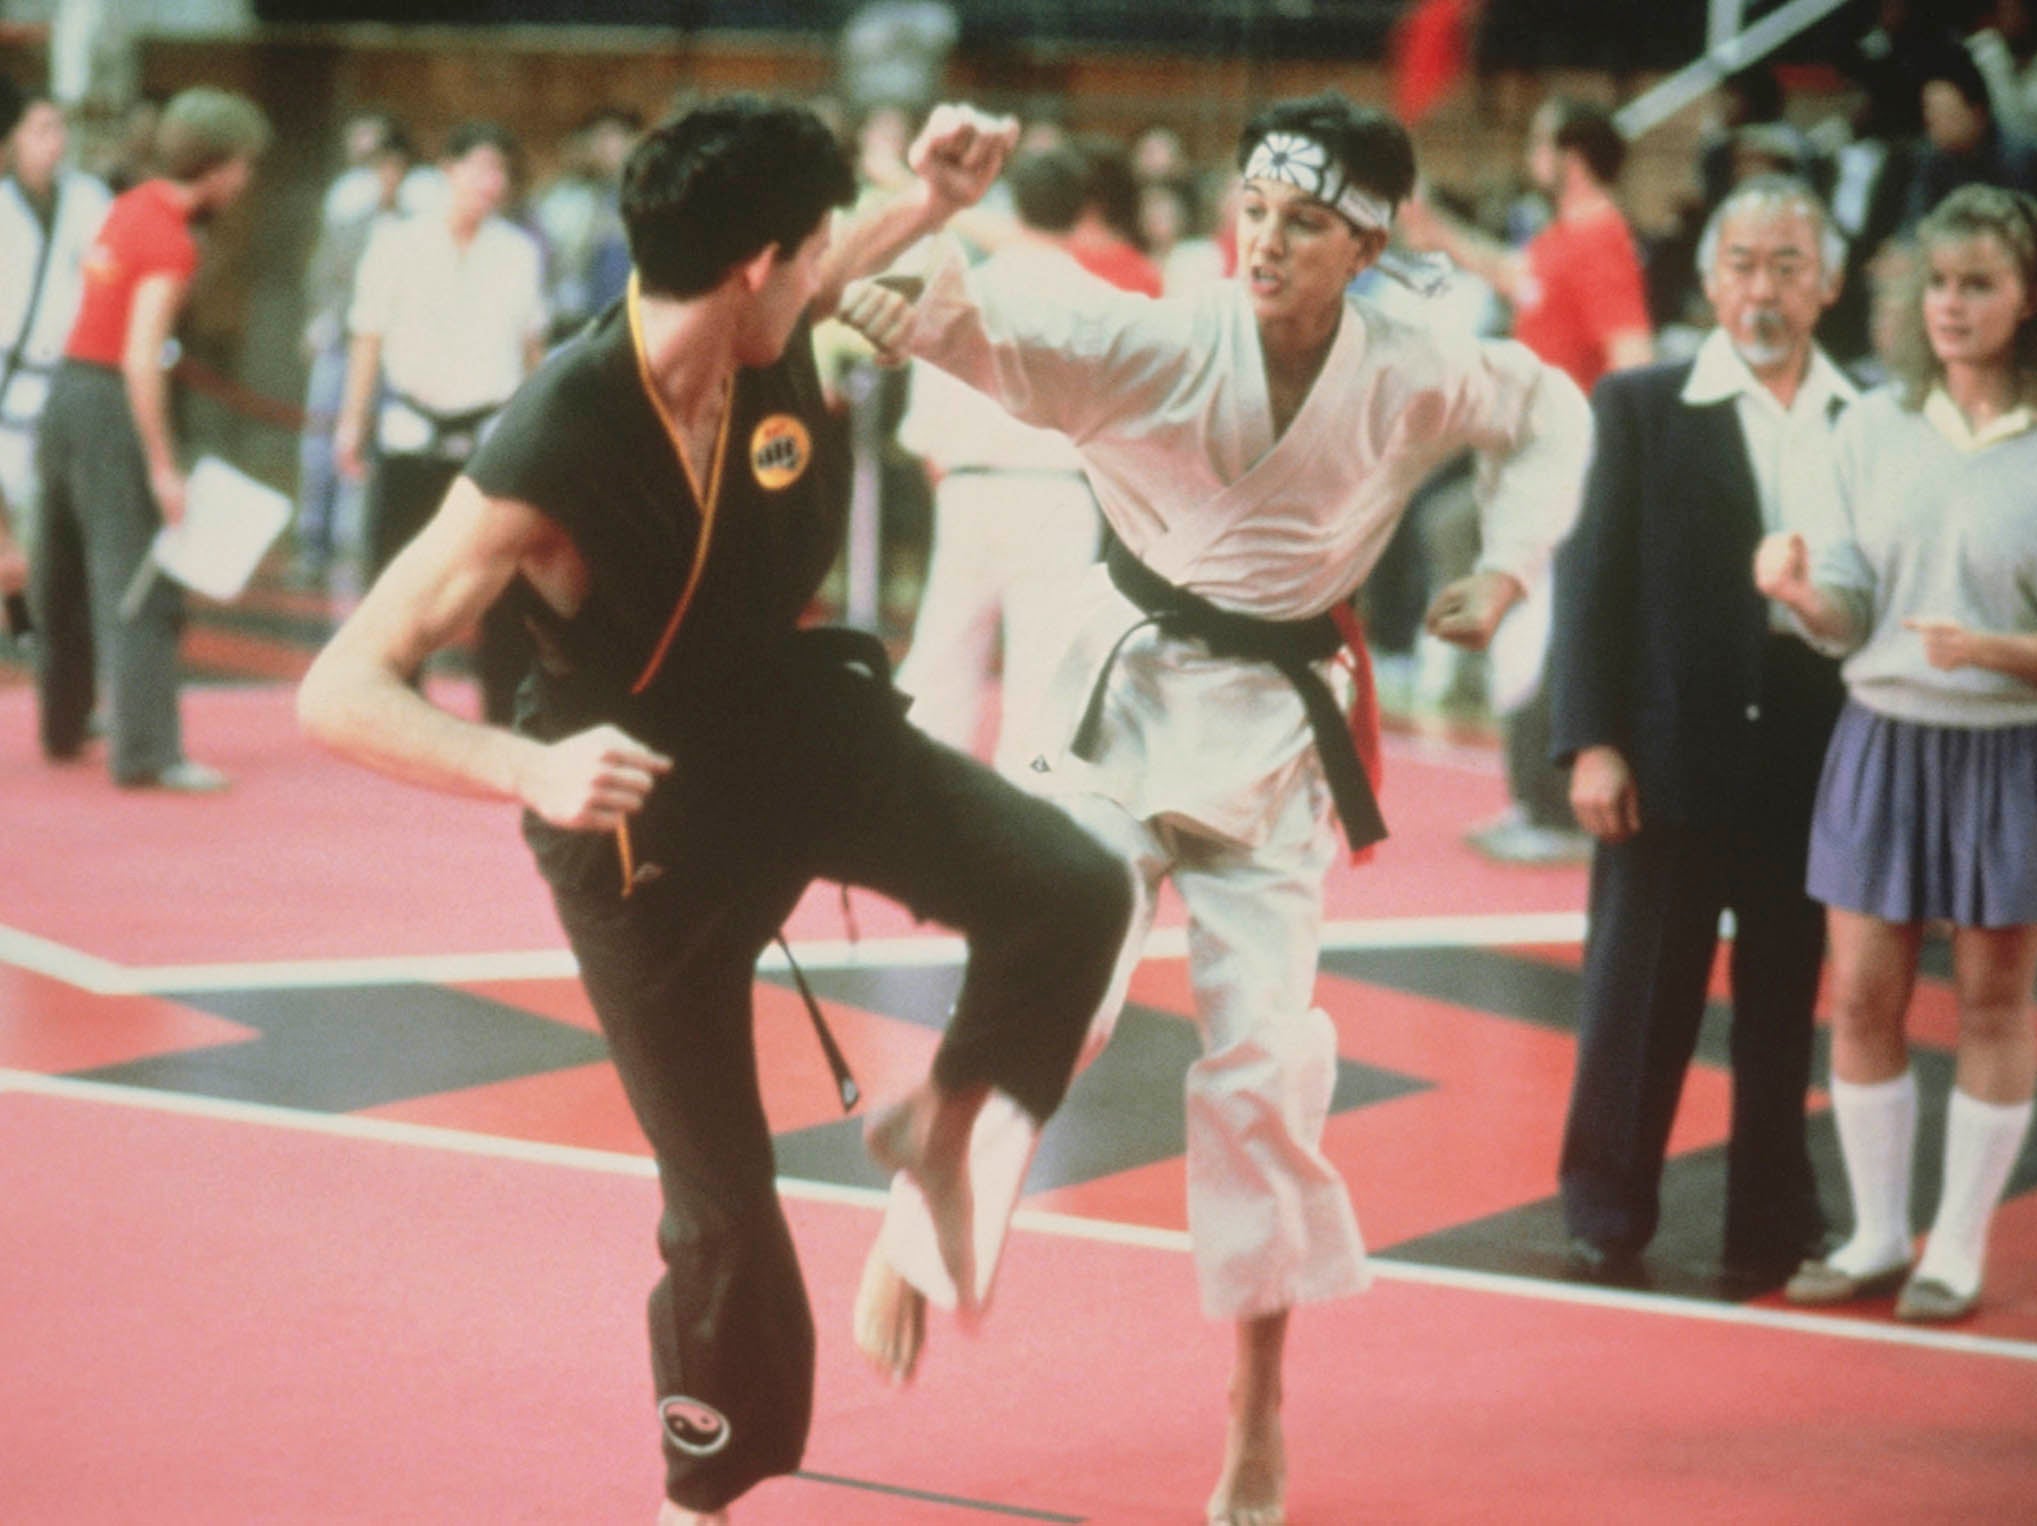 ‘The Karate Kid’ (1984) was one of the defining films of Eighties pop cinema